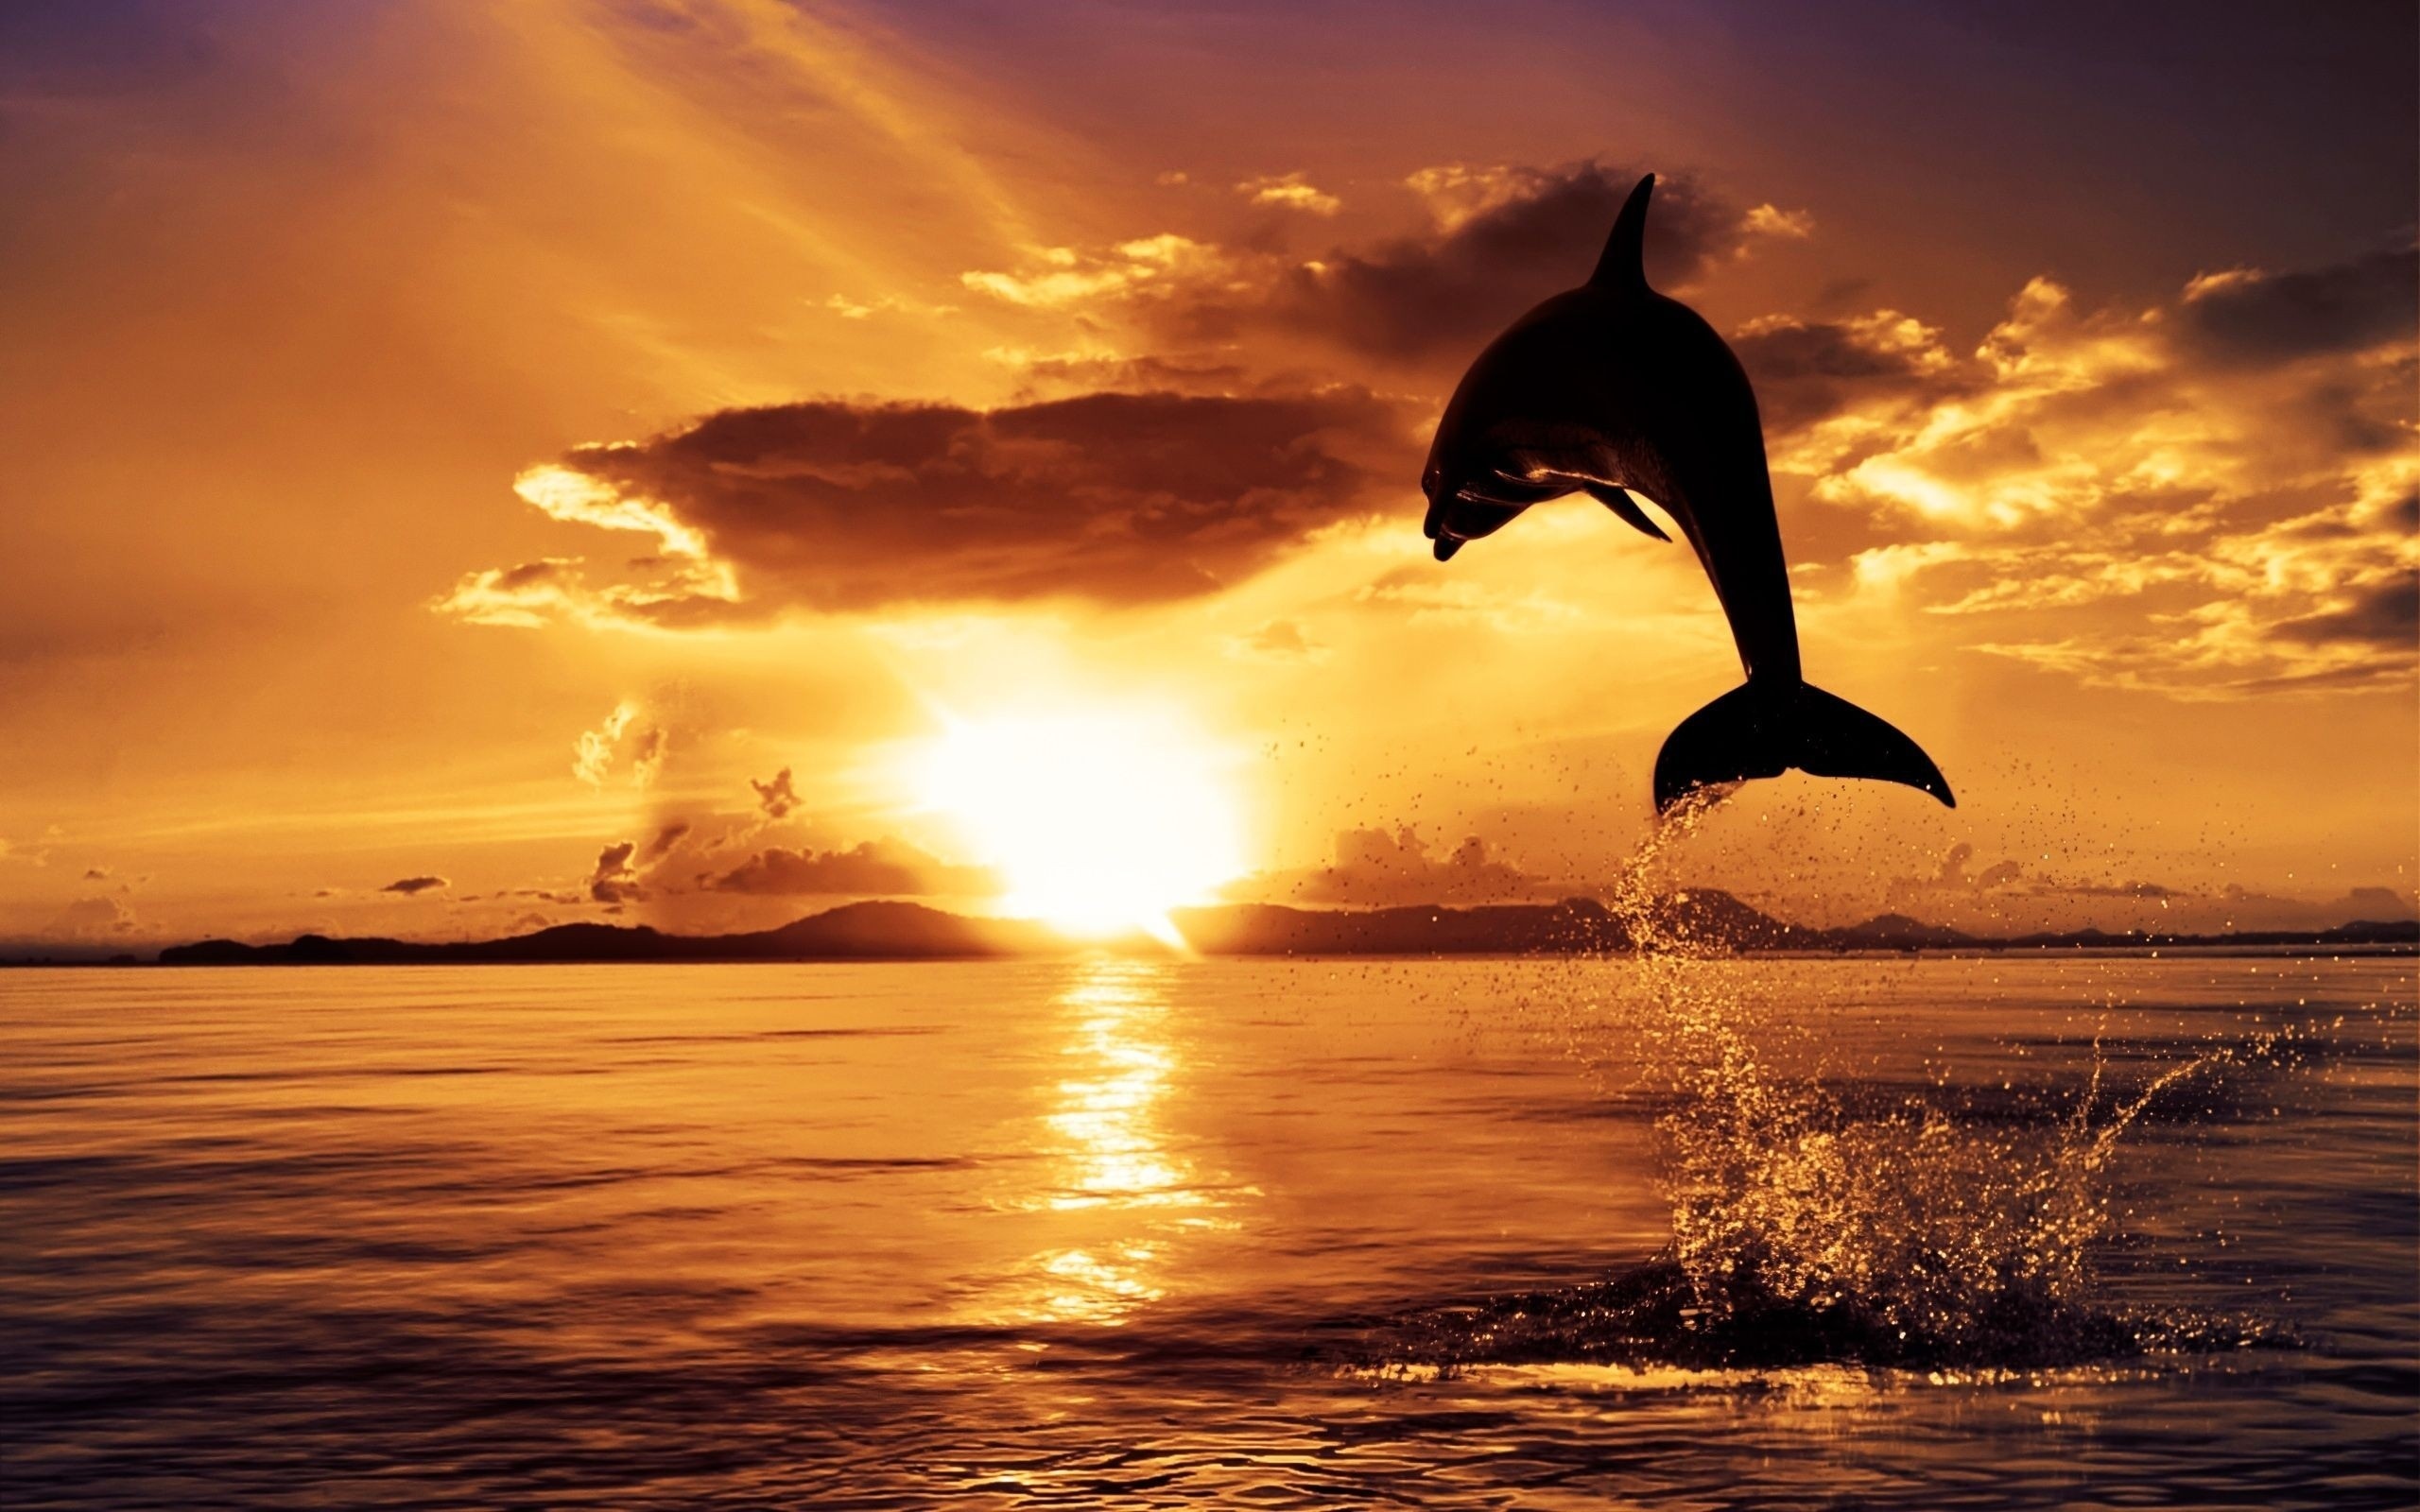 Скачать обои бесплатно Животные, Пейзаж, Море, Дельфины картинка на рабочий стол ПК